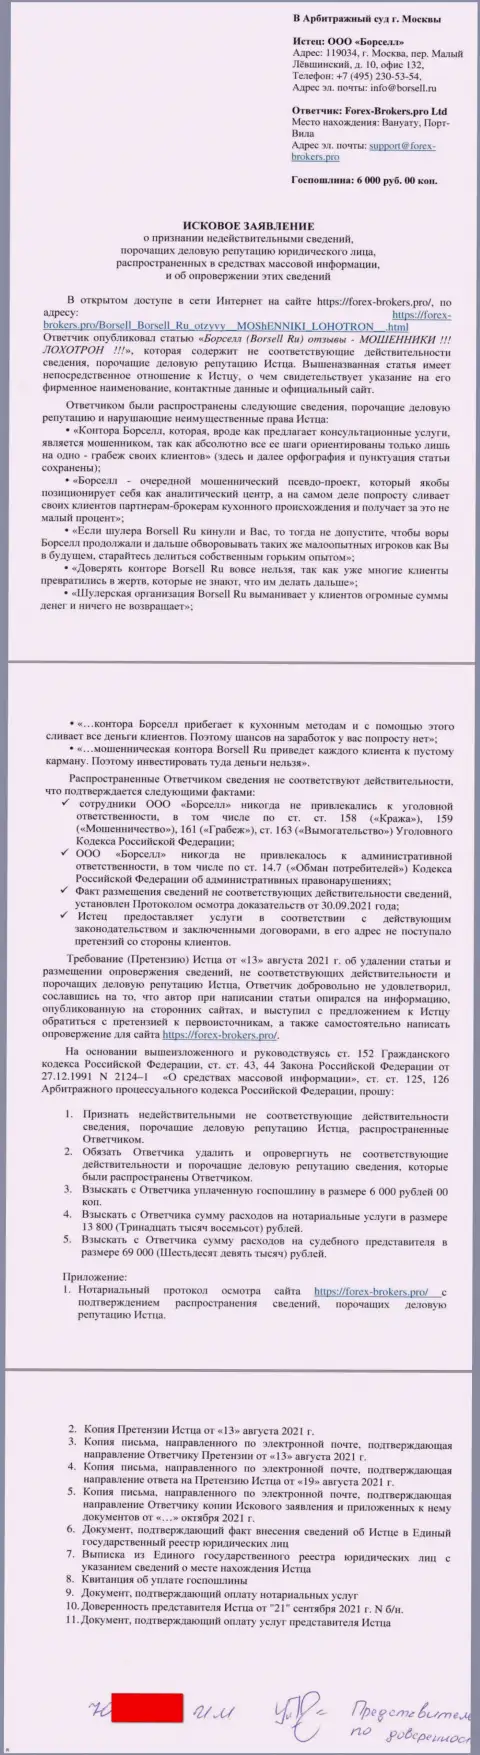 Непосредственно исковое заявление в суд ворюг ООО БОРСЕЛЛ